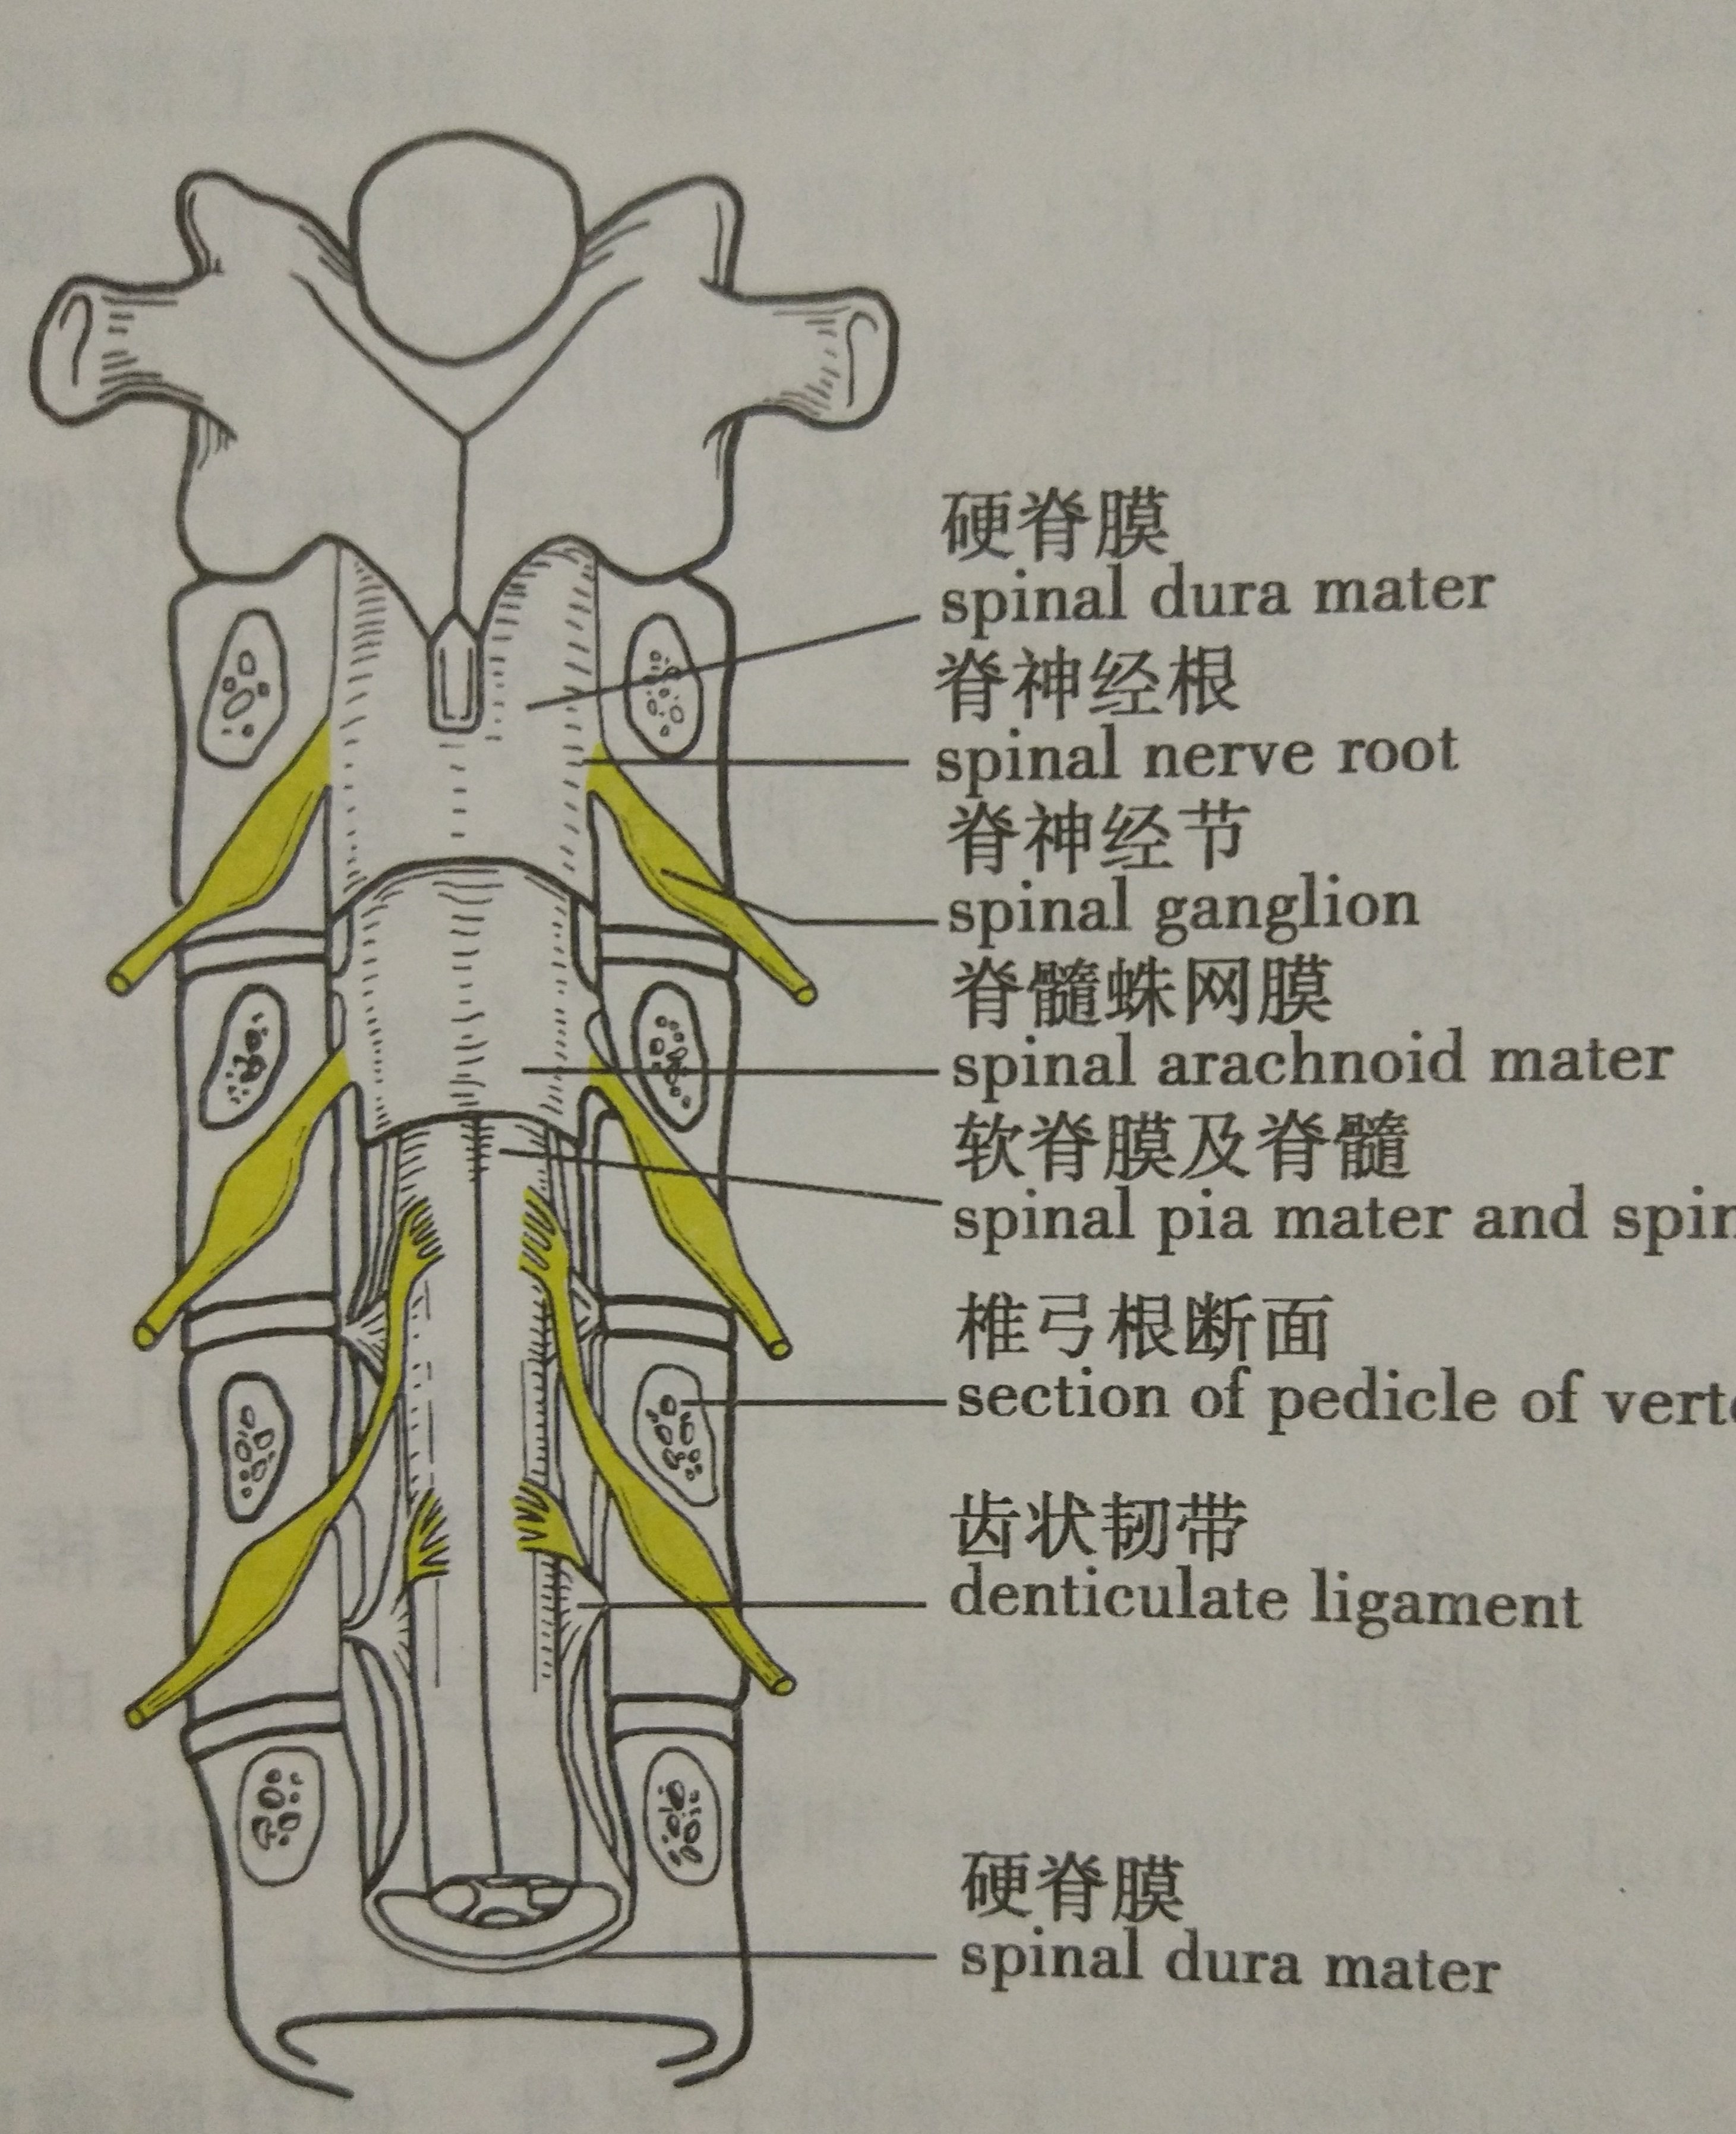 人的椎骨由7节颈椎,12节胸椎,5节腰椎和1块融合的骶椎自上而下连接